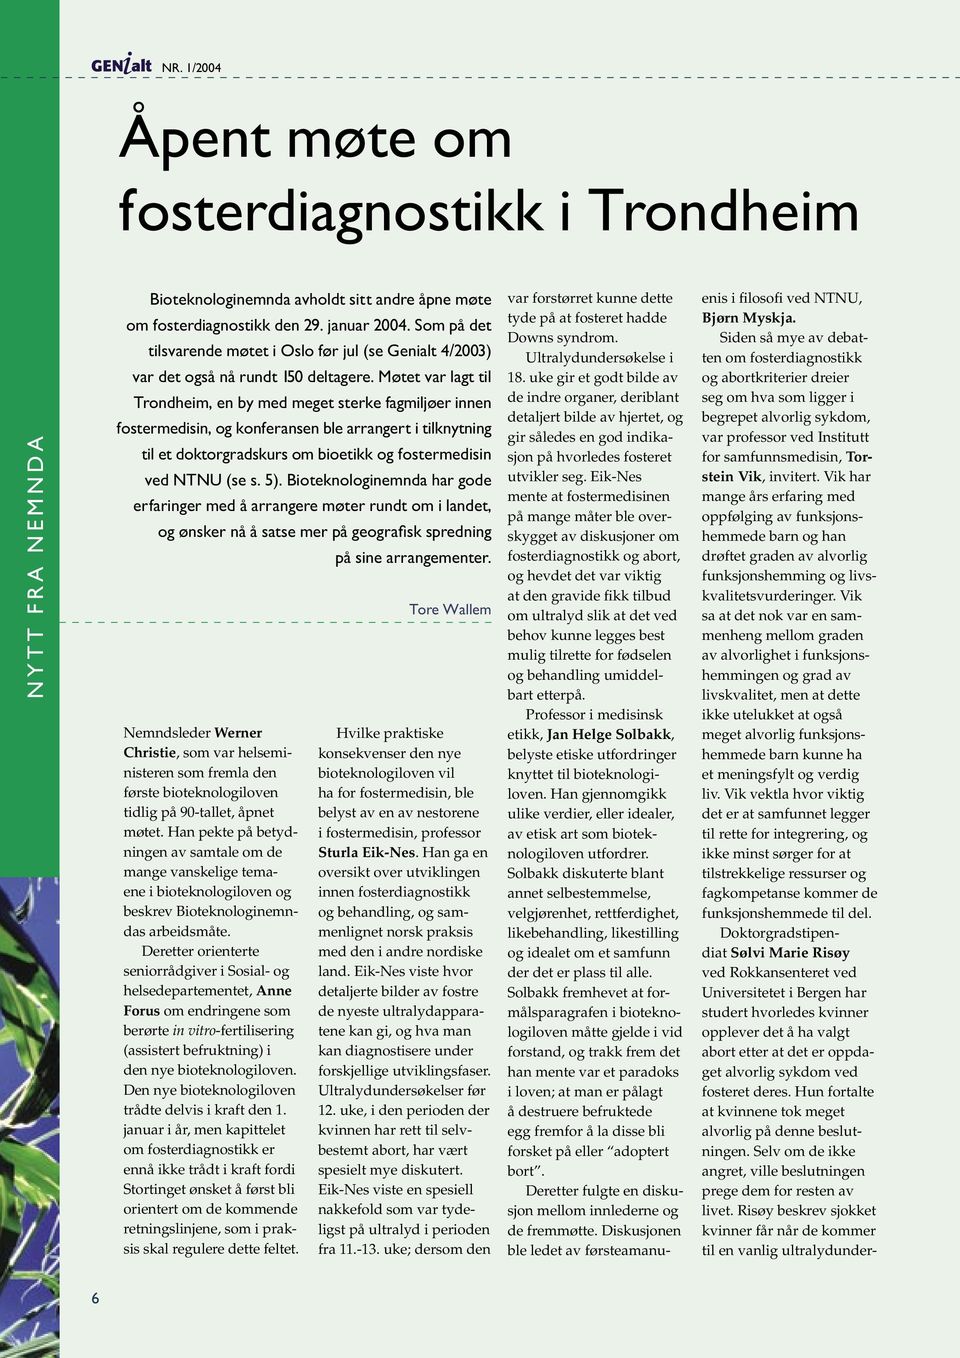 Møtet var lagt til Trondheim, en by med meget sterke fagmiljøer innen fostermedisin, og konferansen ble arrangert i tilknytning til et doktorgradskurs om bioetikk og fostermedisin ved NTNU (se s. 5).